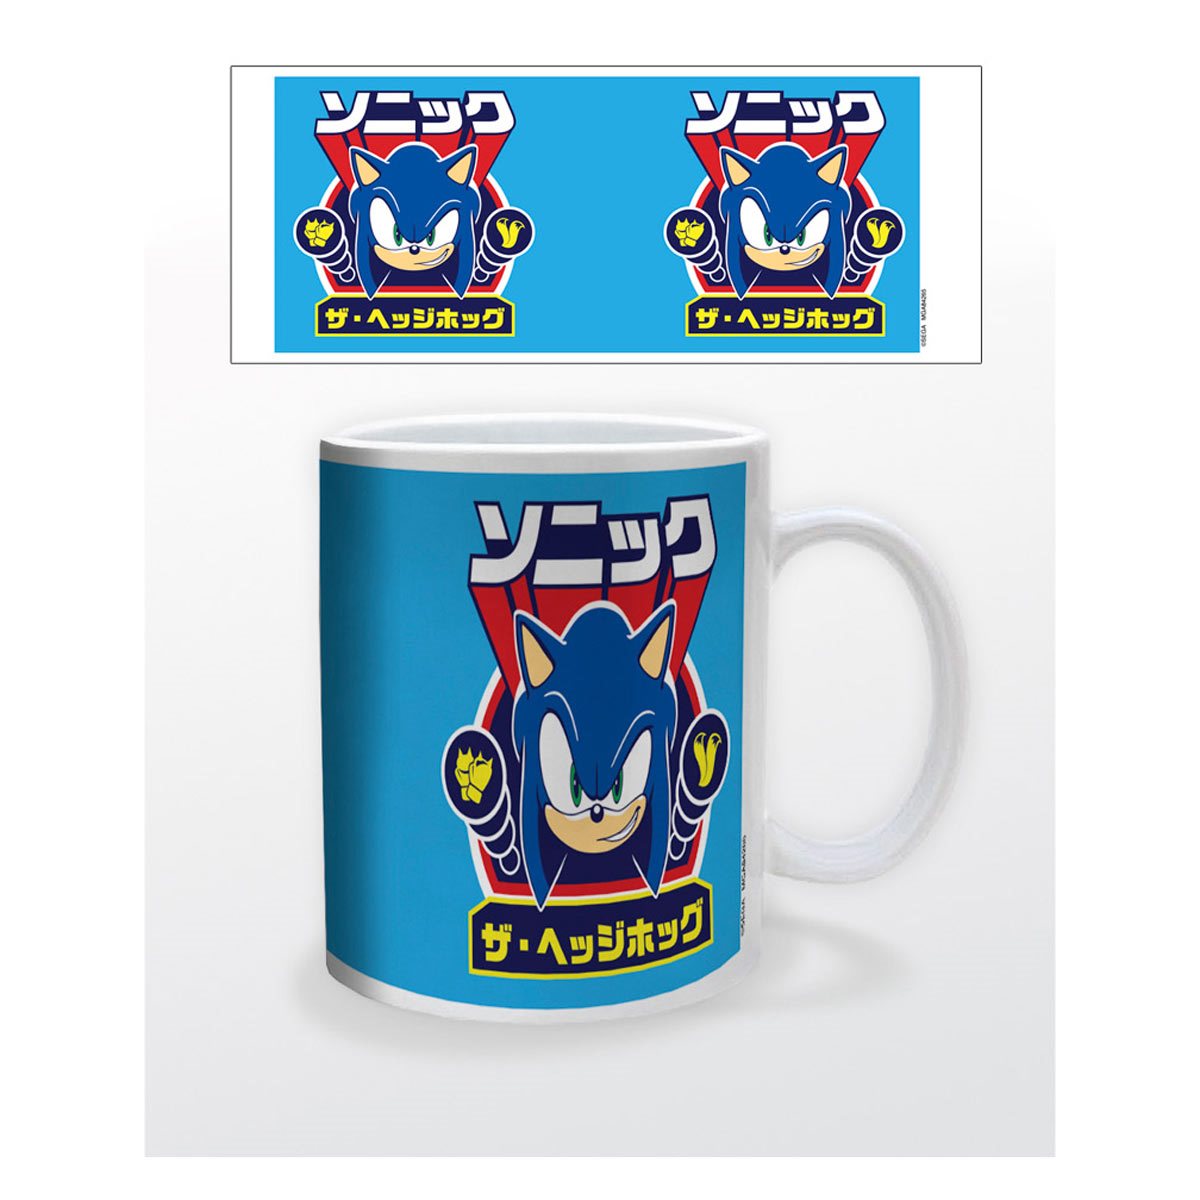 Sonic the Hedgehog 18 oz. Ceramic Oval Mug